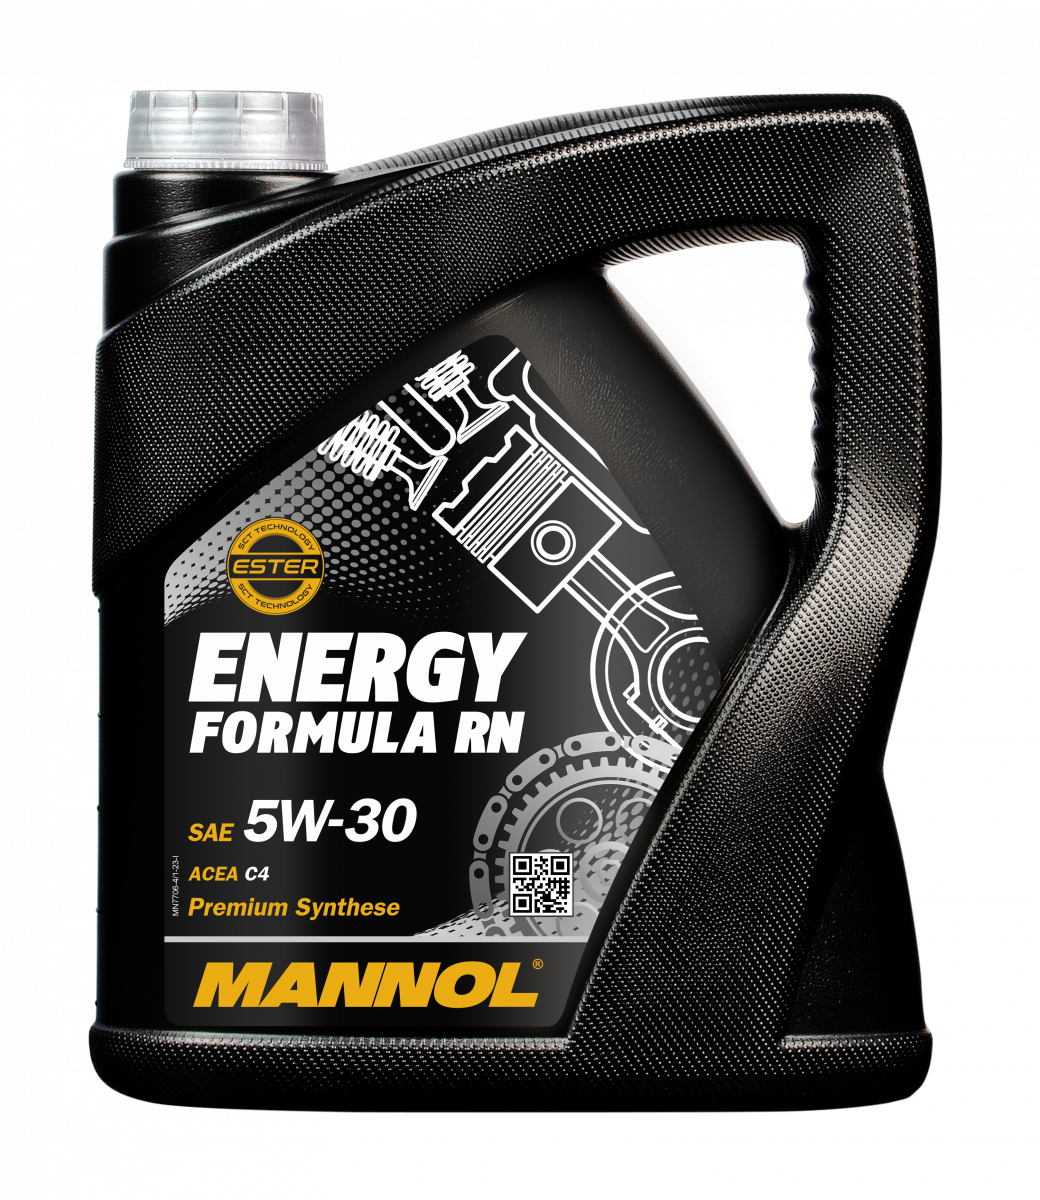 4 Liter Mannol 5W-30 Energy Formula RN - € 19,95